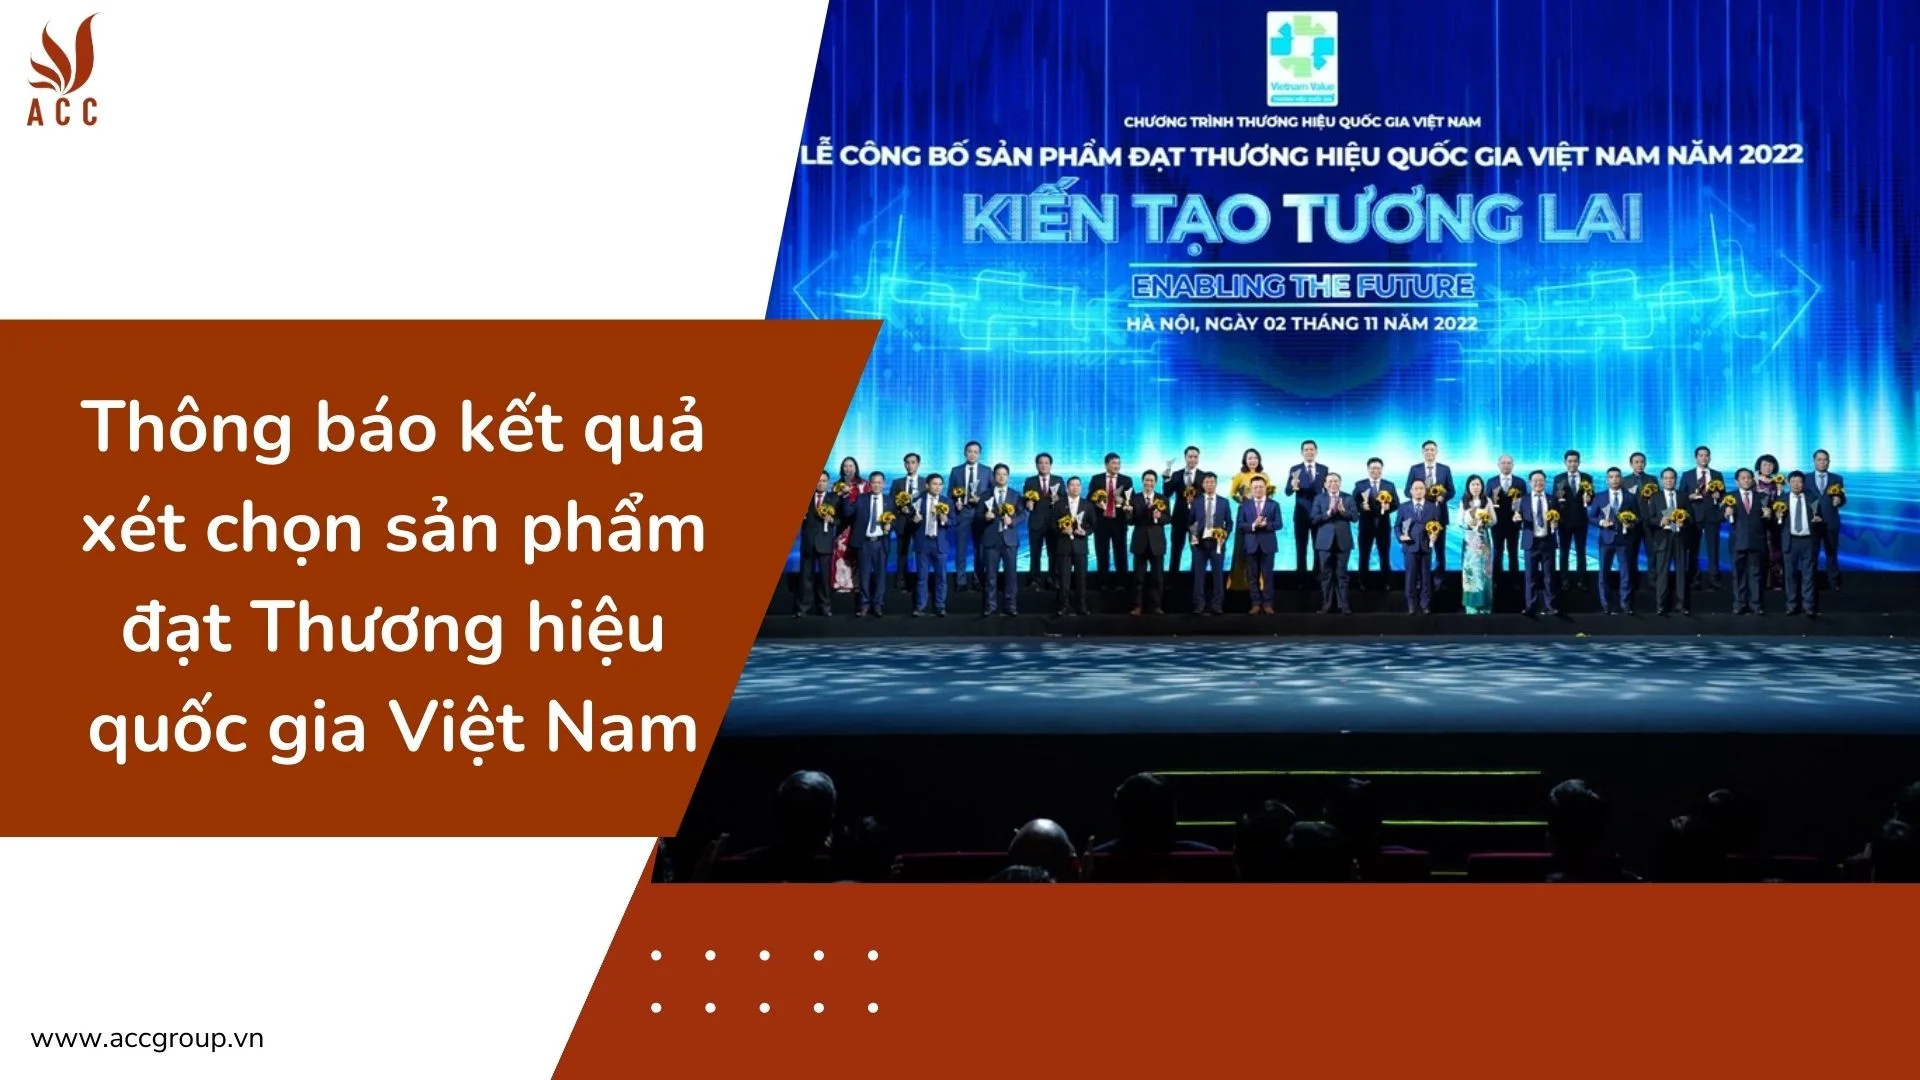 Thông báo kết quả xét chọn sản phẩm đạt Thương hiệu quốc gia Việt Nam